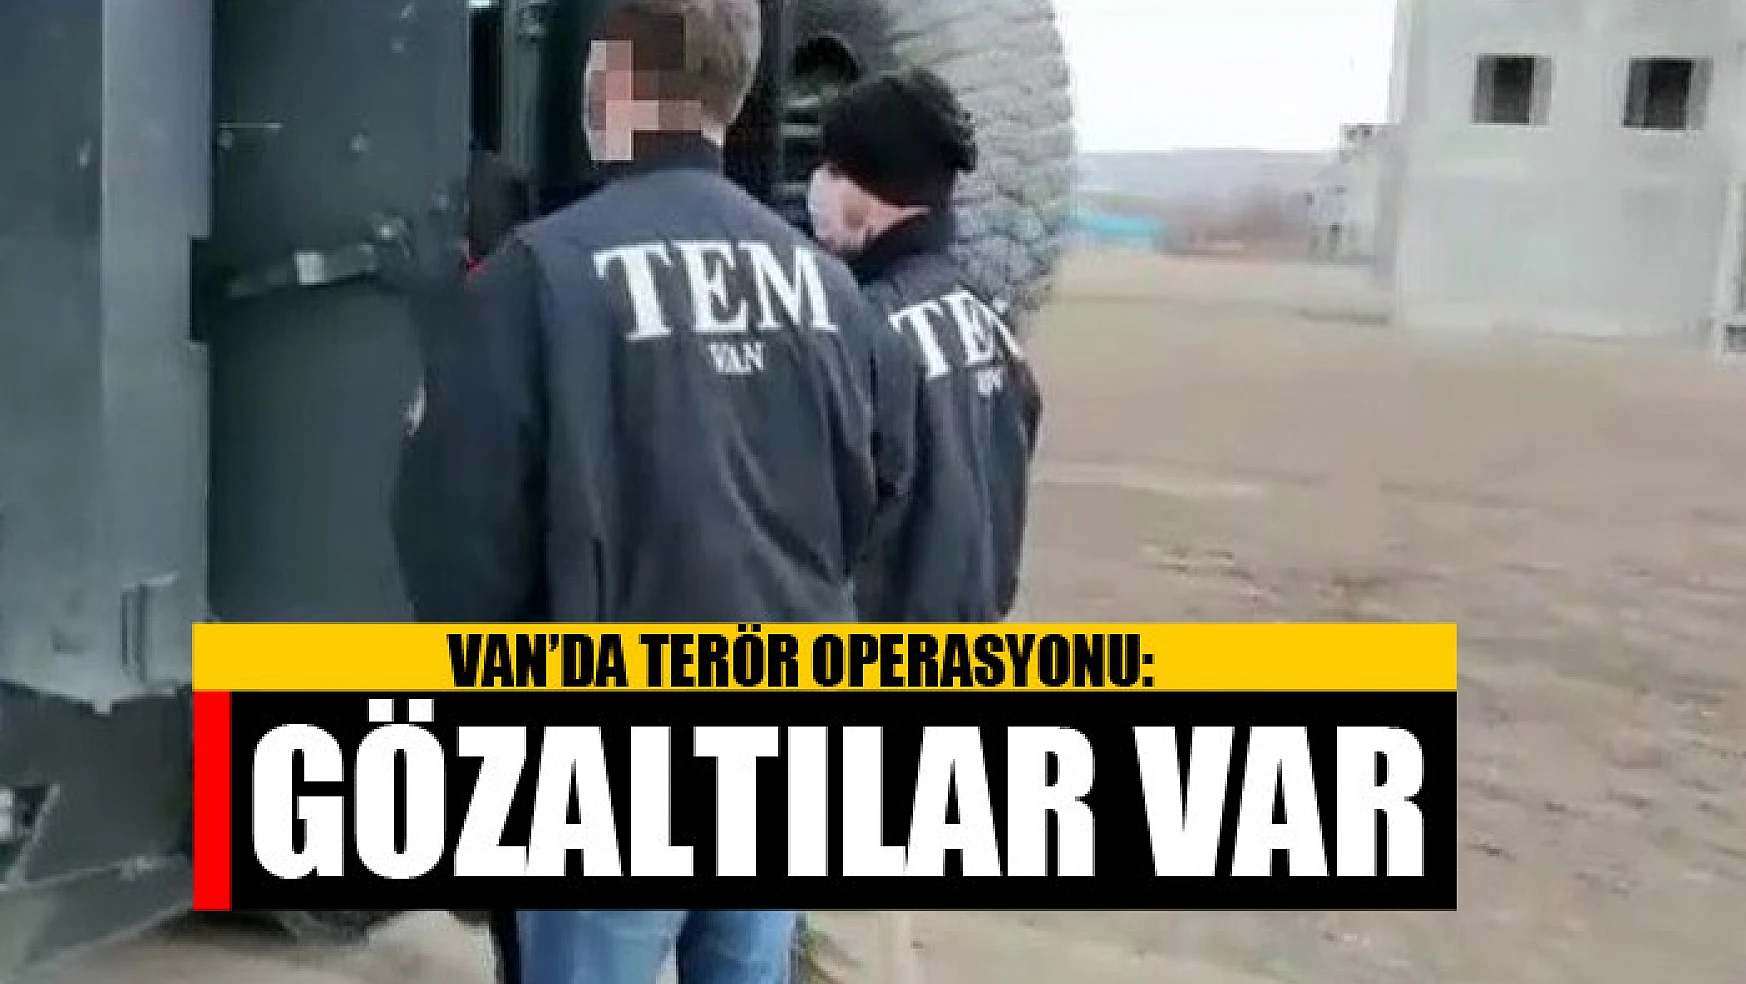 Van'da terör operasyonu: Gözaltılar var